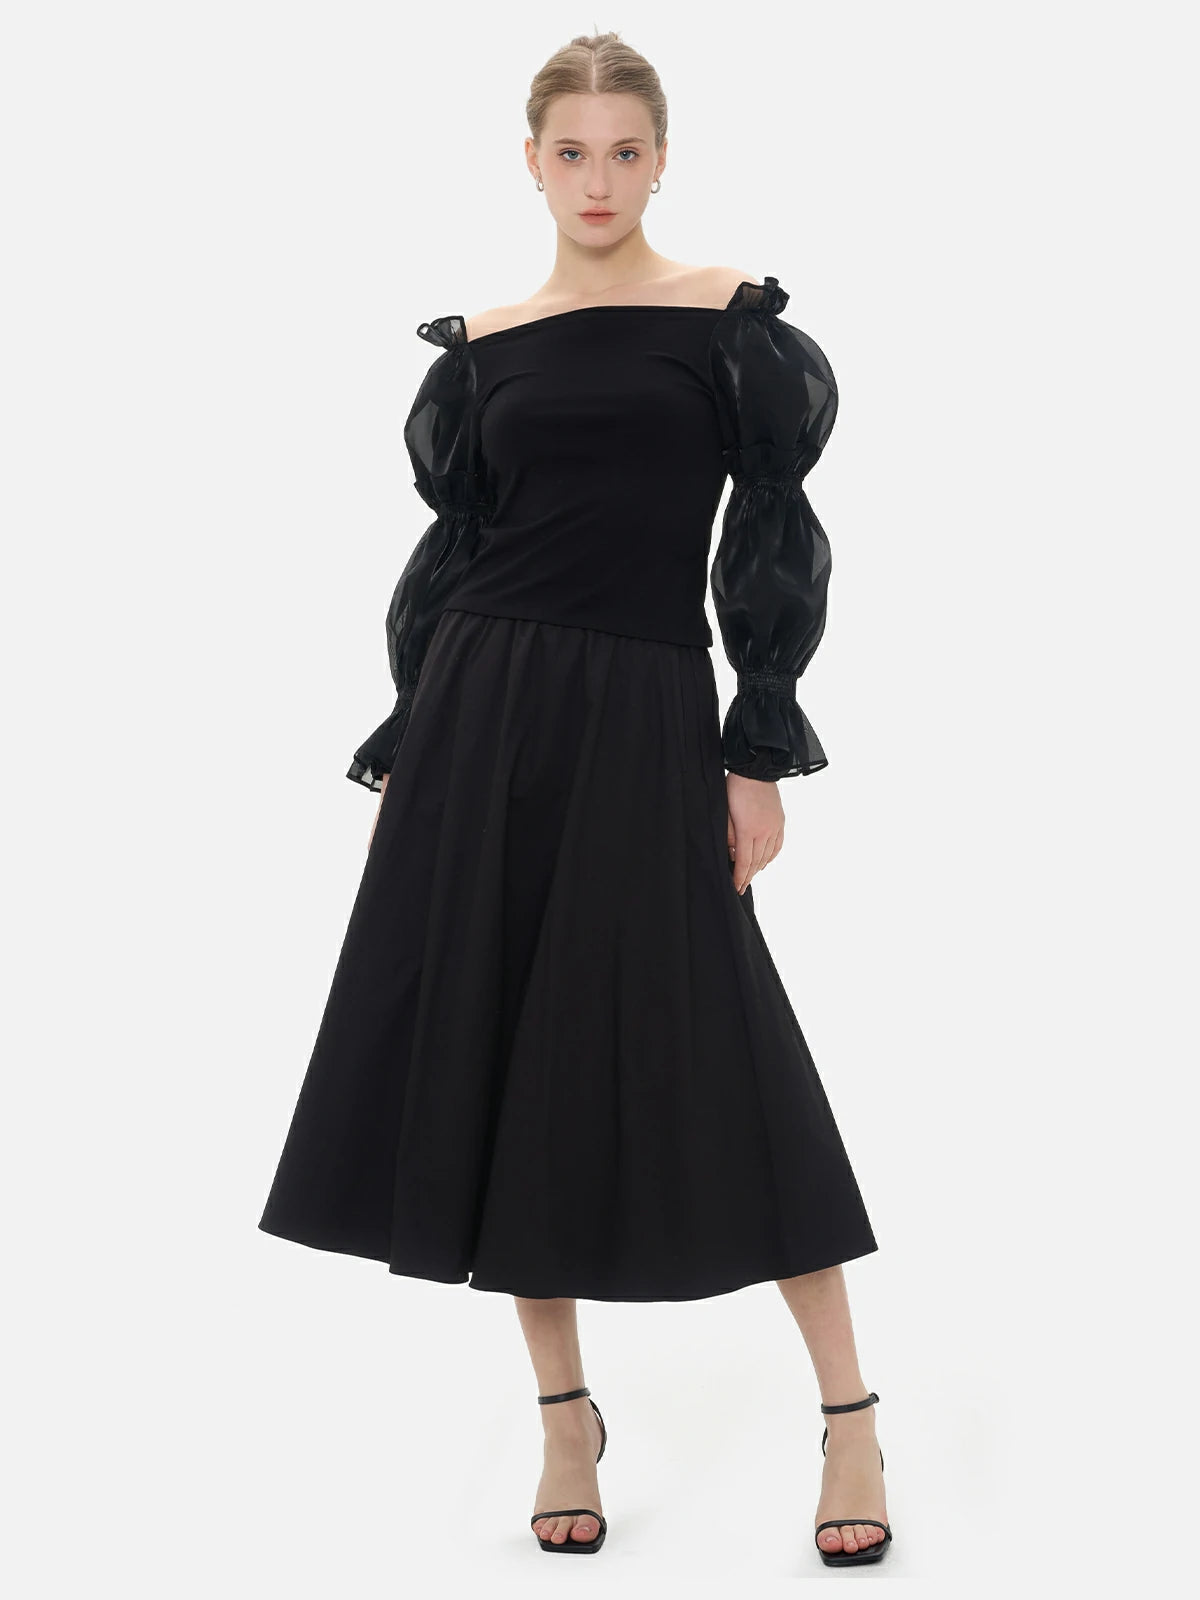 Elegant black mesh blouse with a one-shoulder design